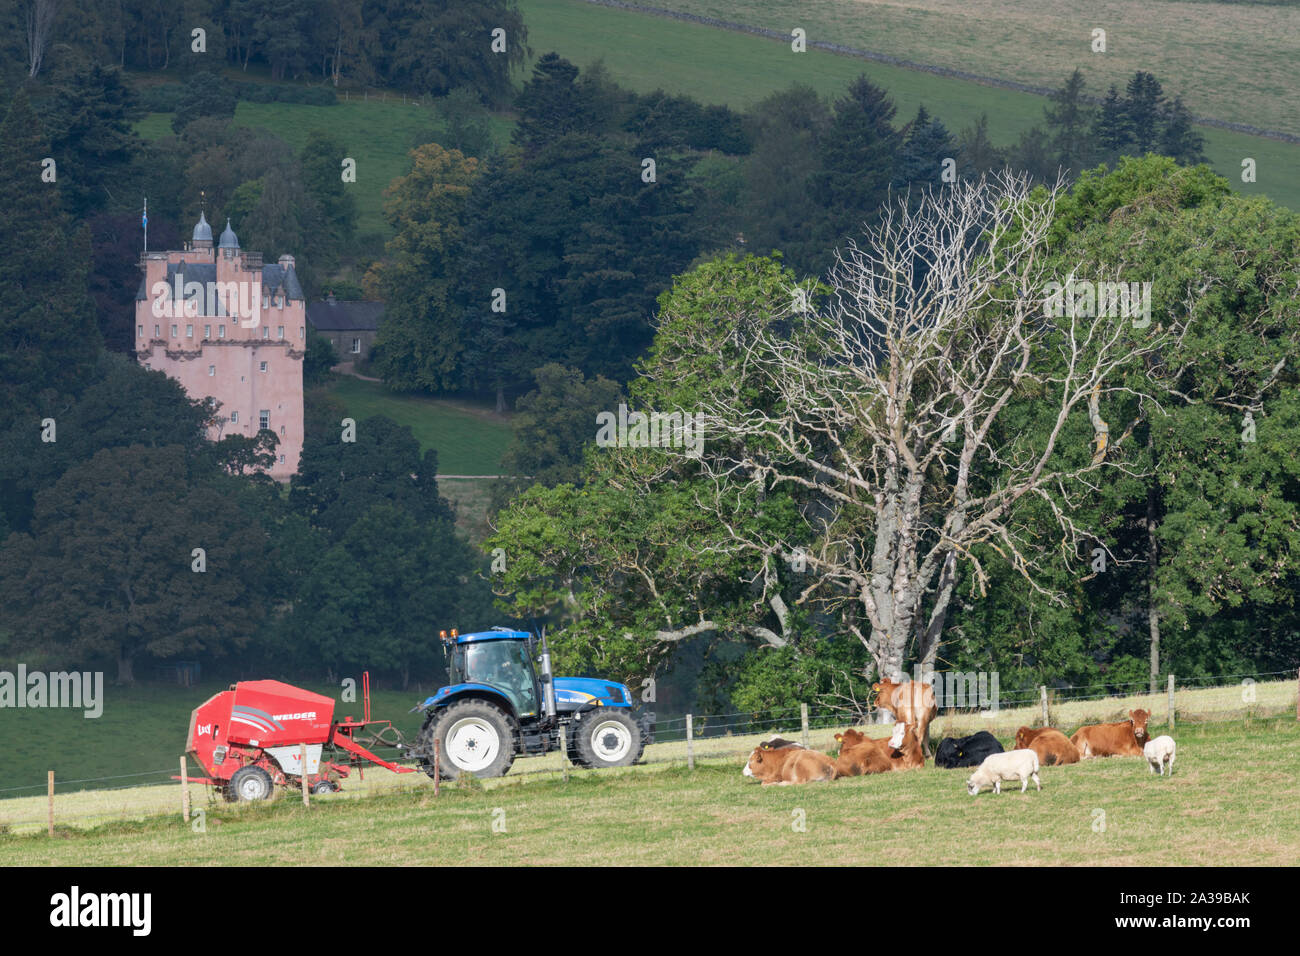 Un tracteur bleu et rouge de la ramasseuse-presse en face de Craigievar Castle avec des moutons et du bétail dans un champ adjacent Banque D'Images